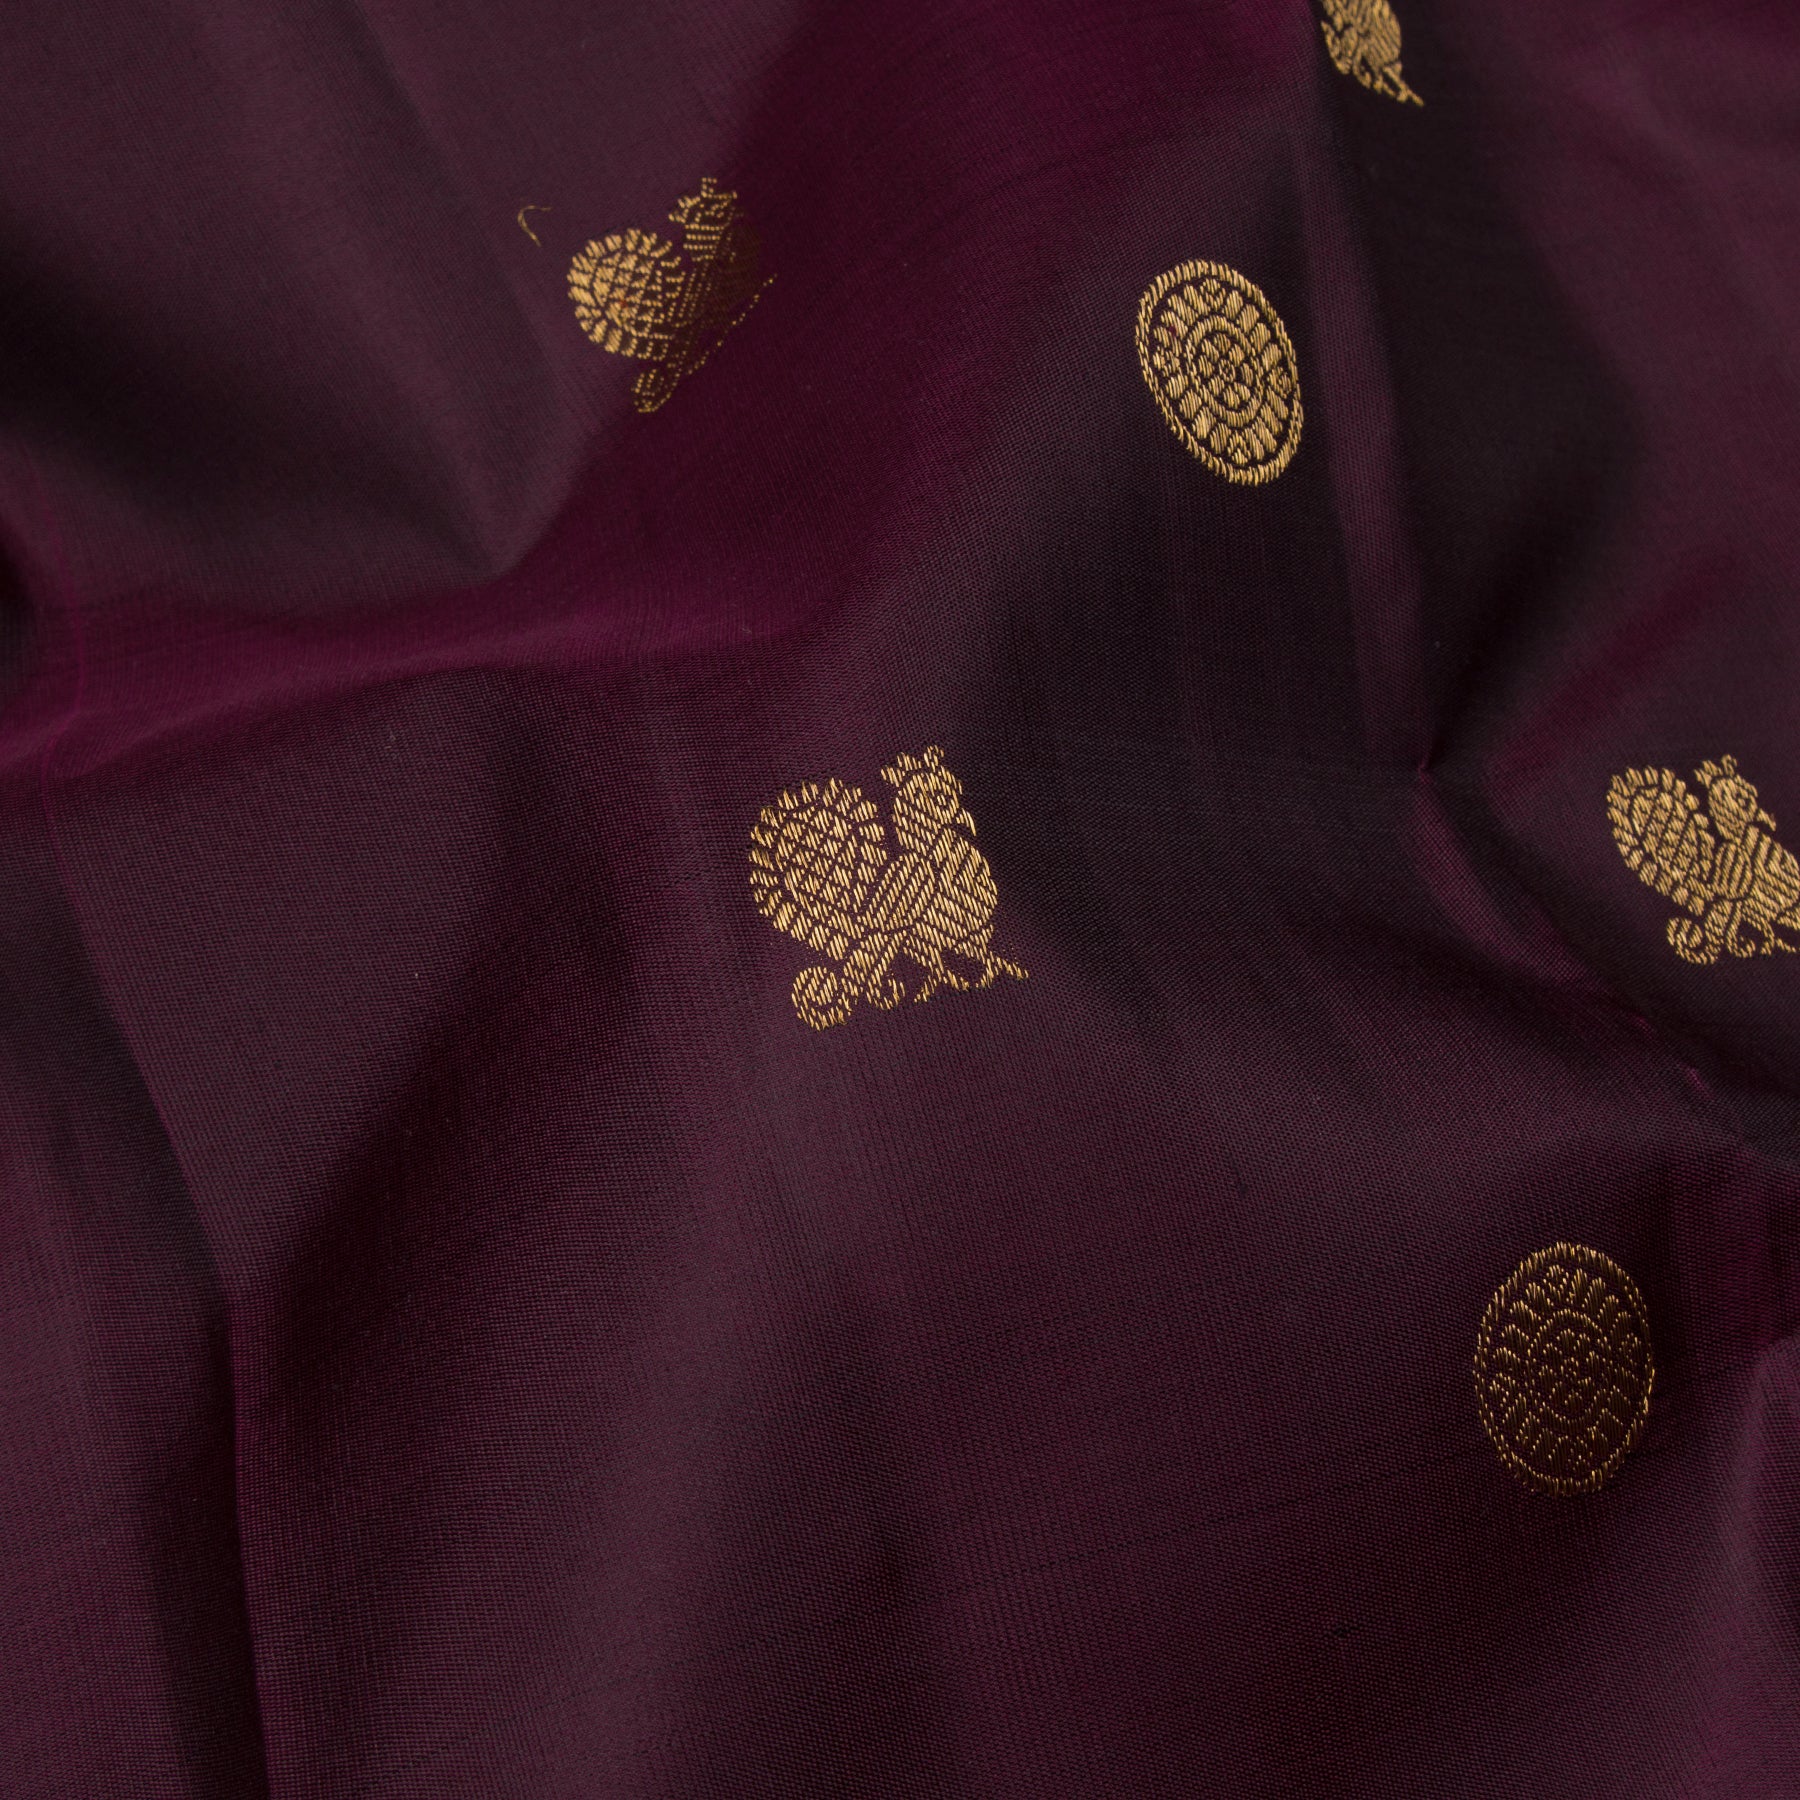 Kanakavalli Kanjivaram Silk Sari 23-595-HS001-13695 - Fabric View